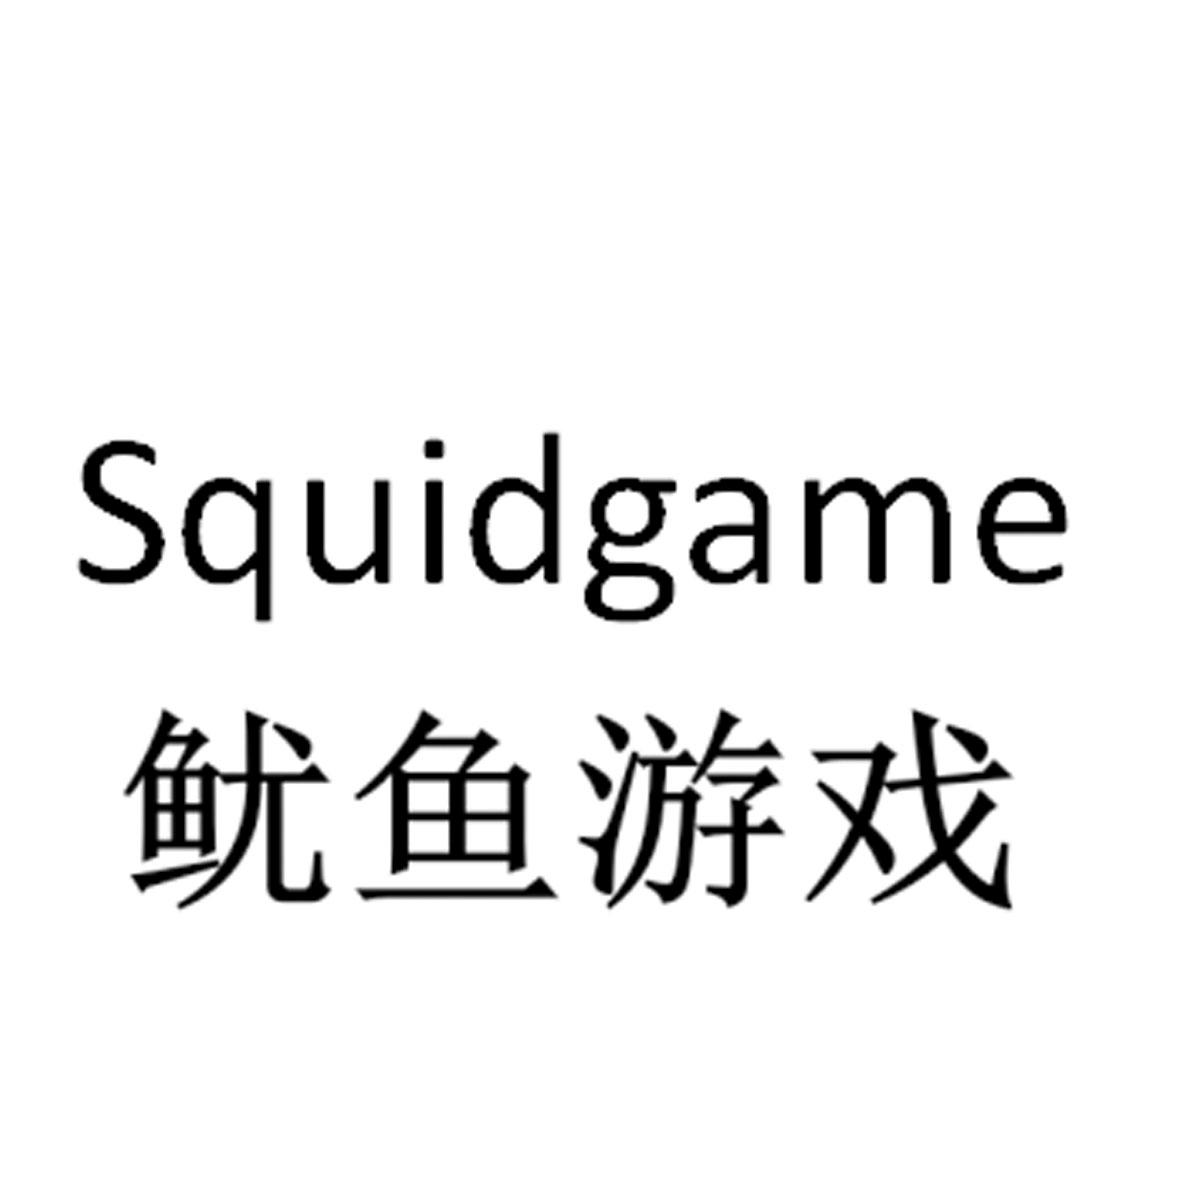 squid game图片